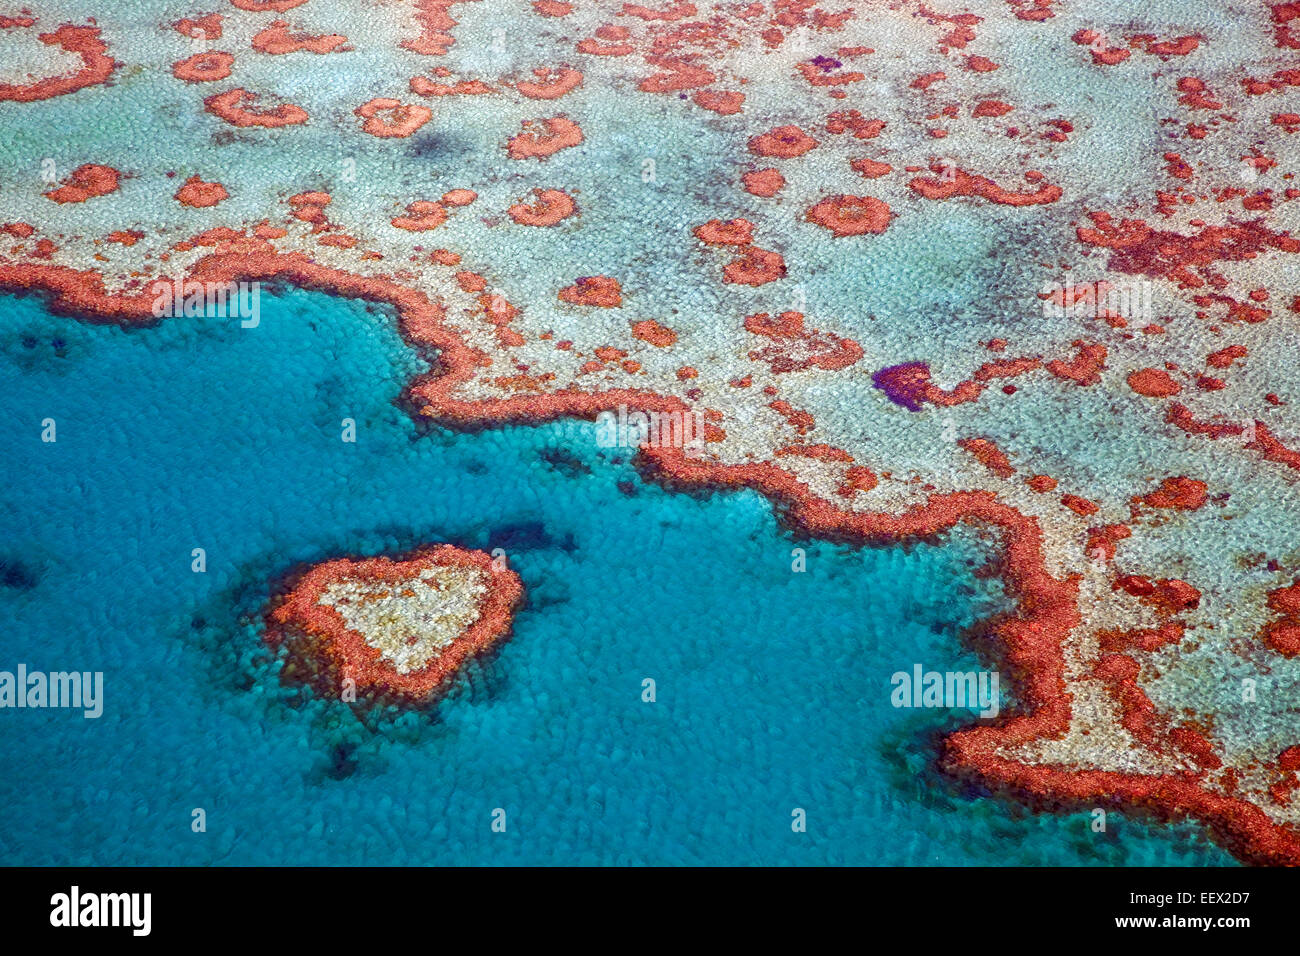 Luftaufnahme der Herzform Heart Reef, Teil des Great Barrier Reef Whitsundays in der Coral Sea, Queensland, Australien Stockfoto